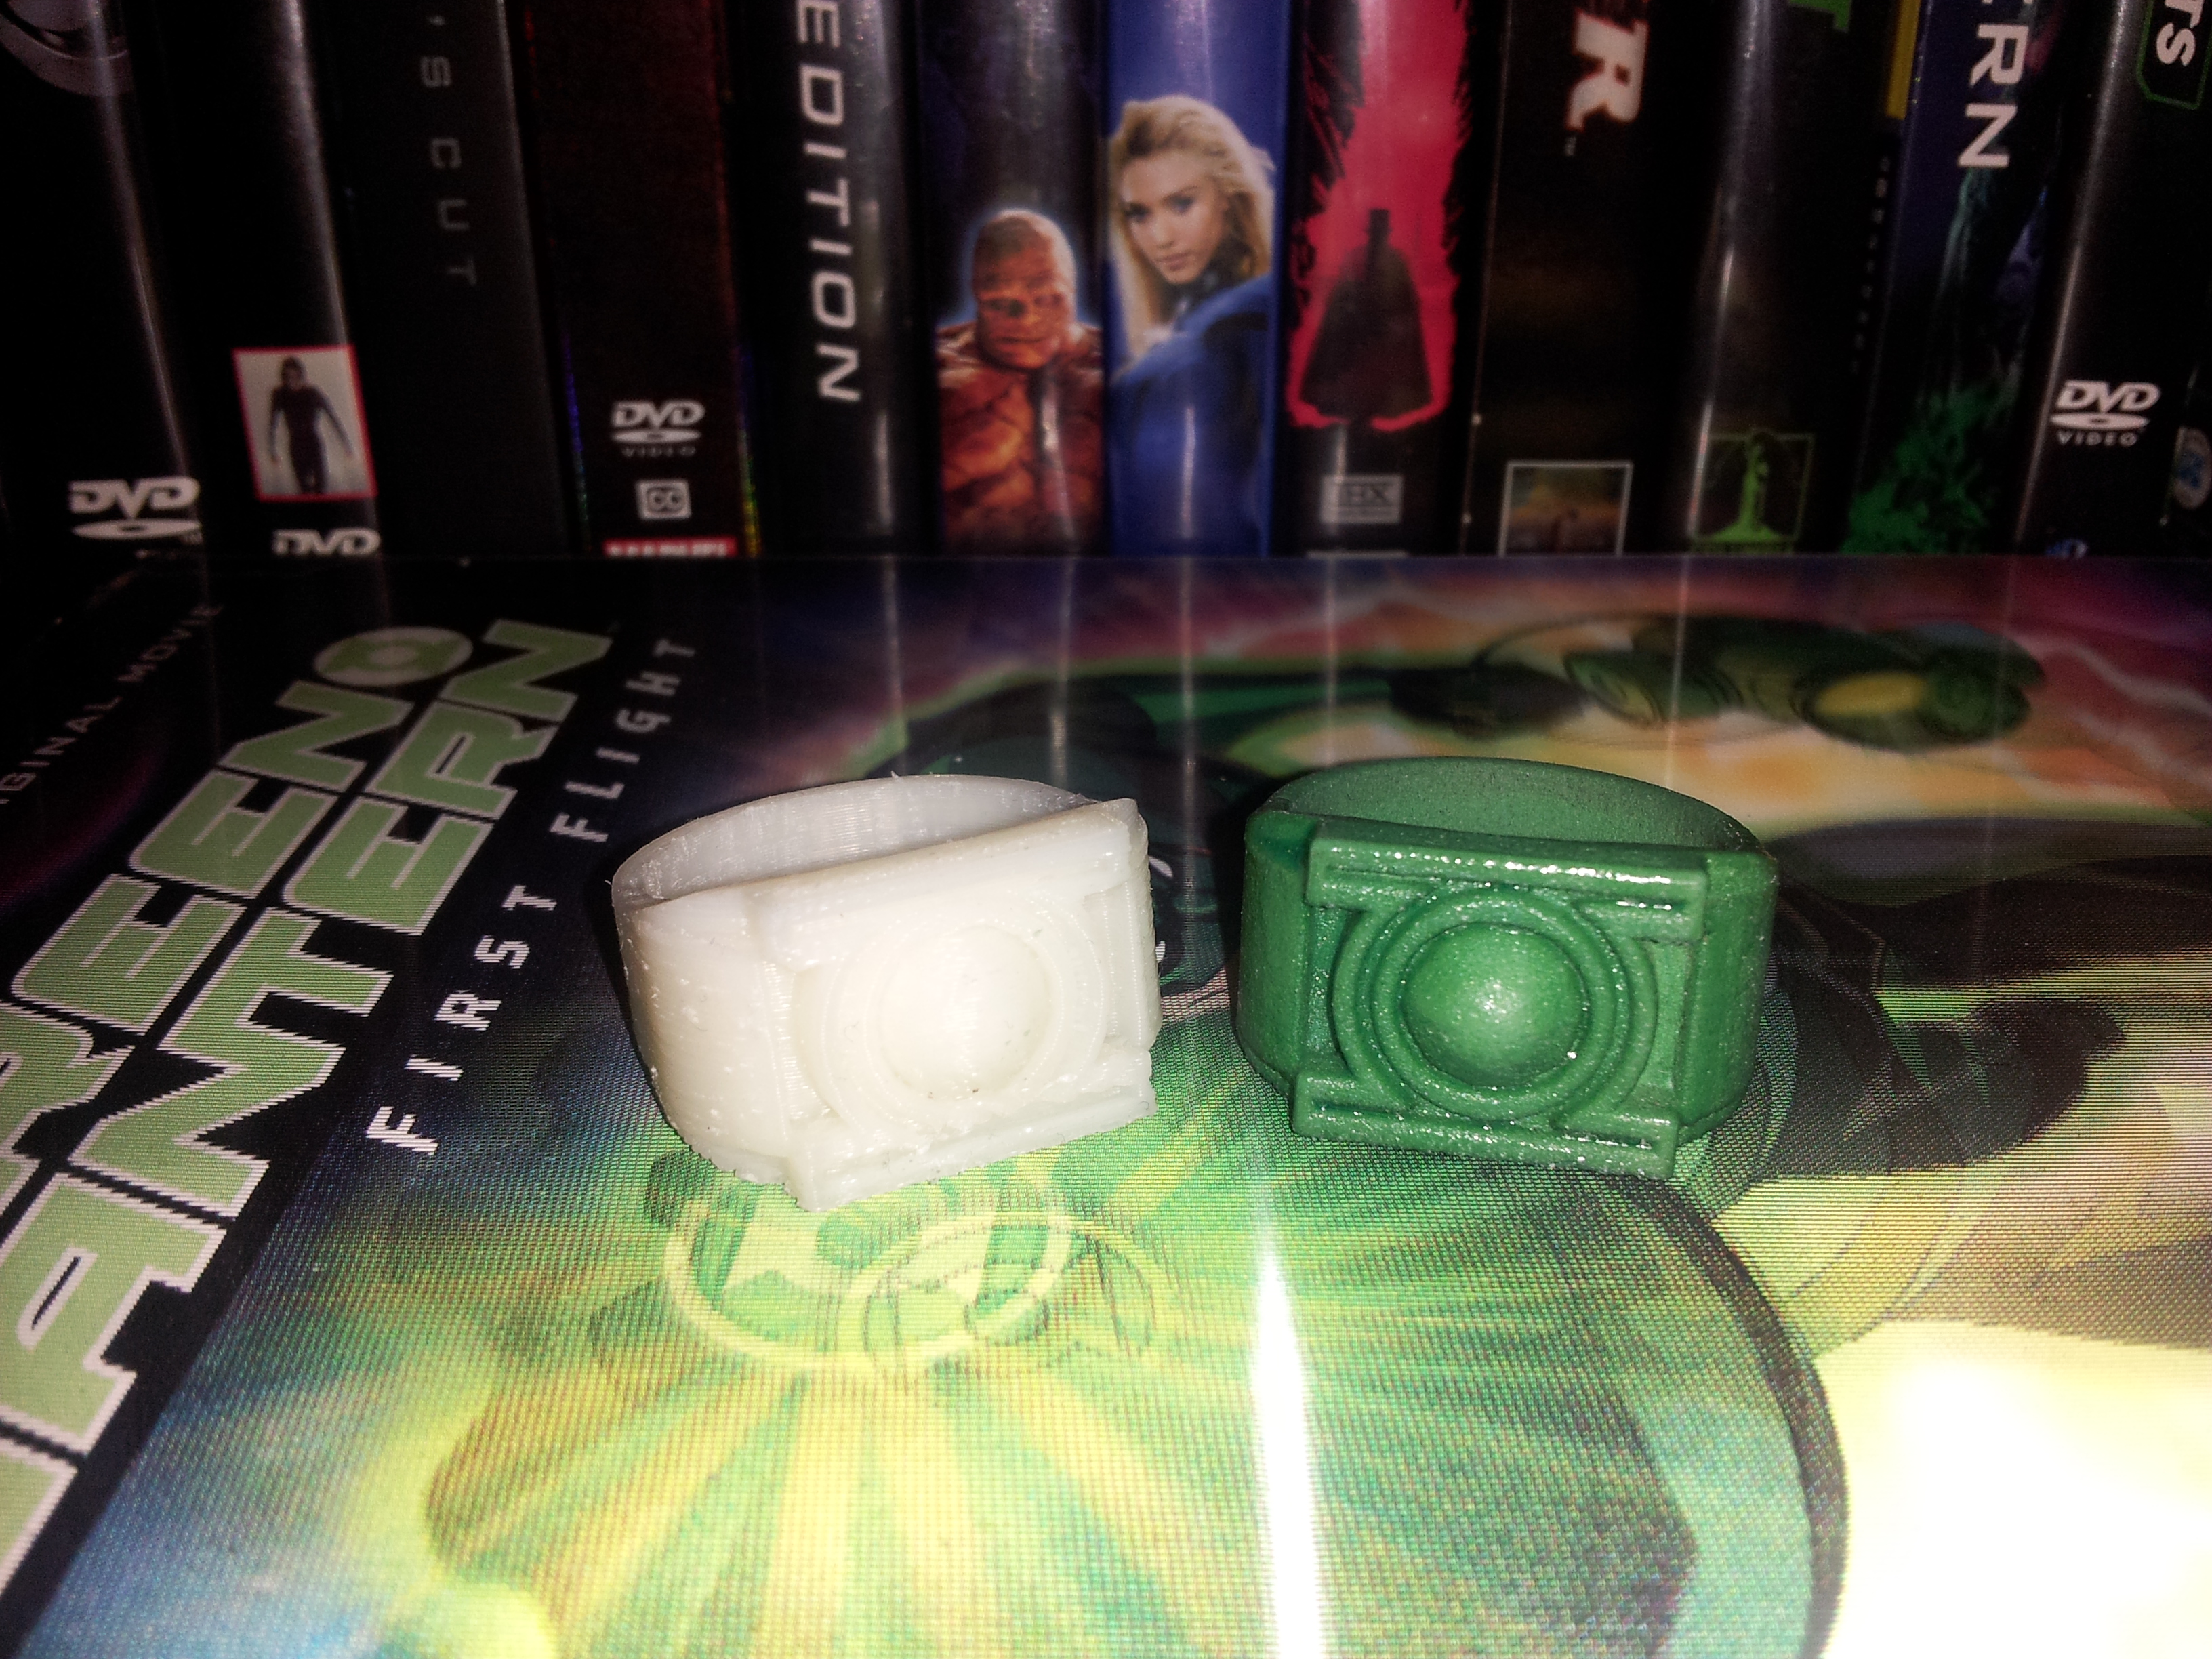 Green Lantern inspired ring.